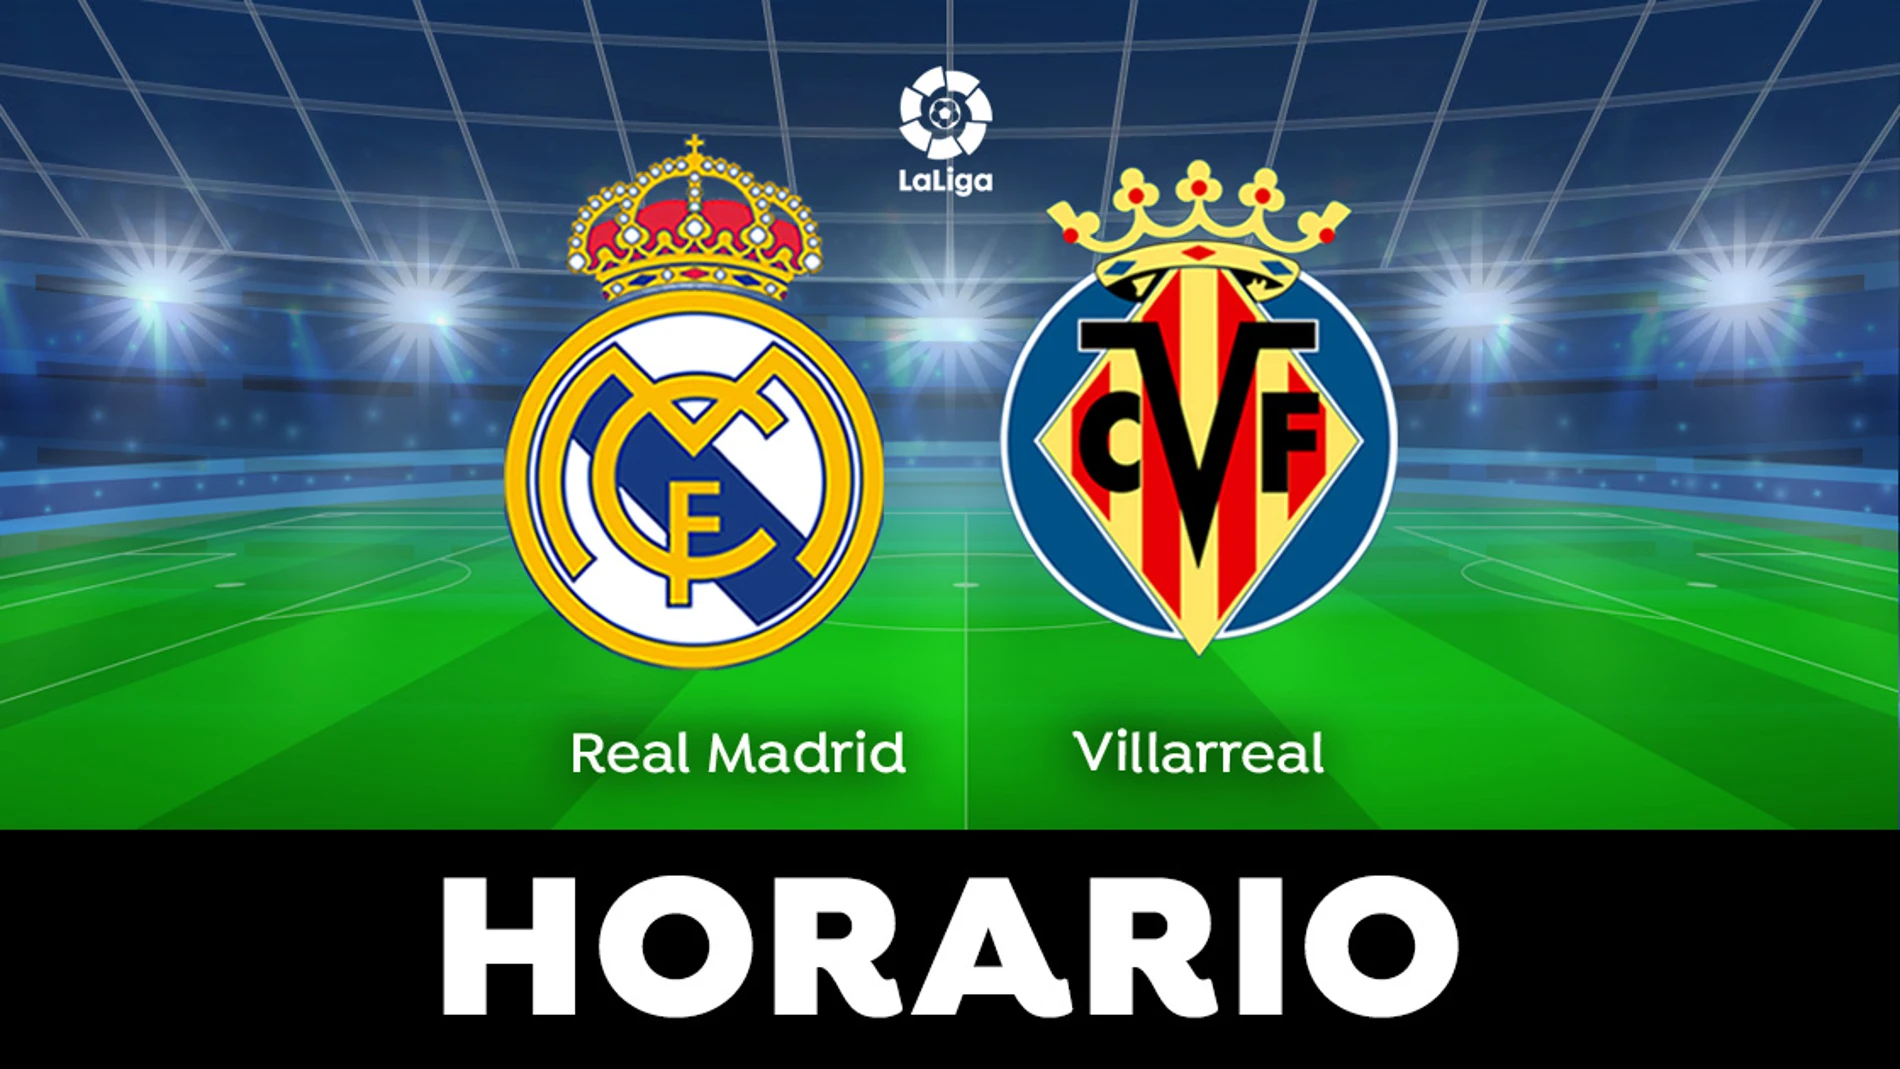 Real Madrid - Villarreal: partido de LaLiga